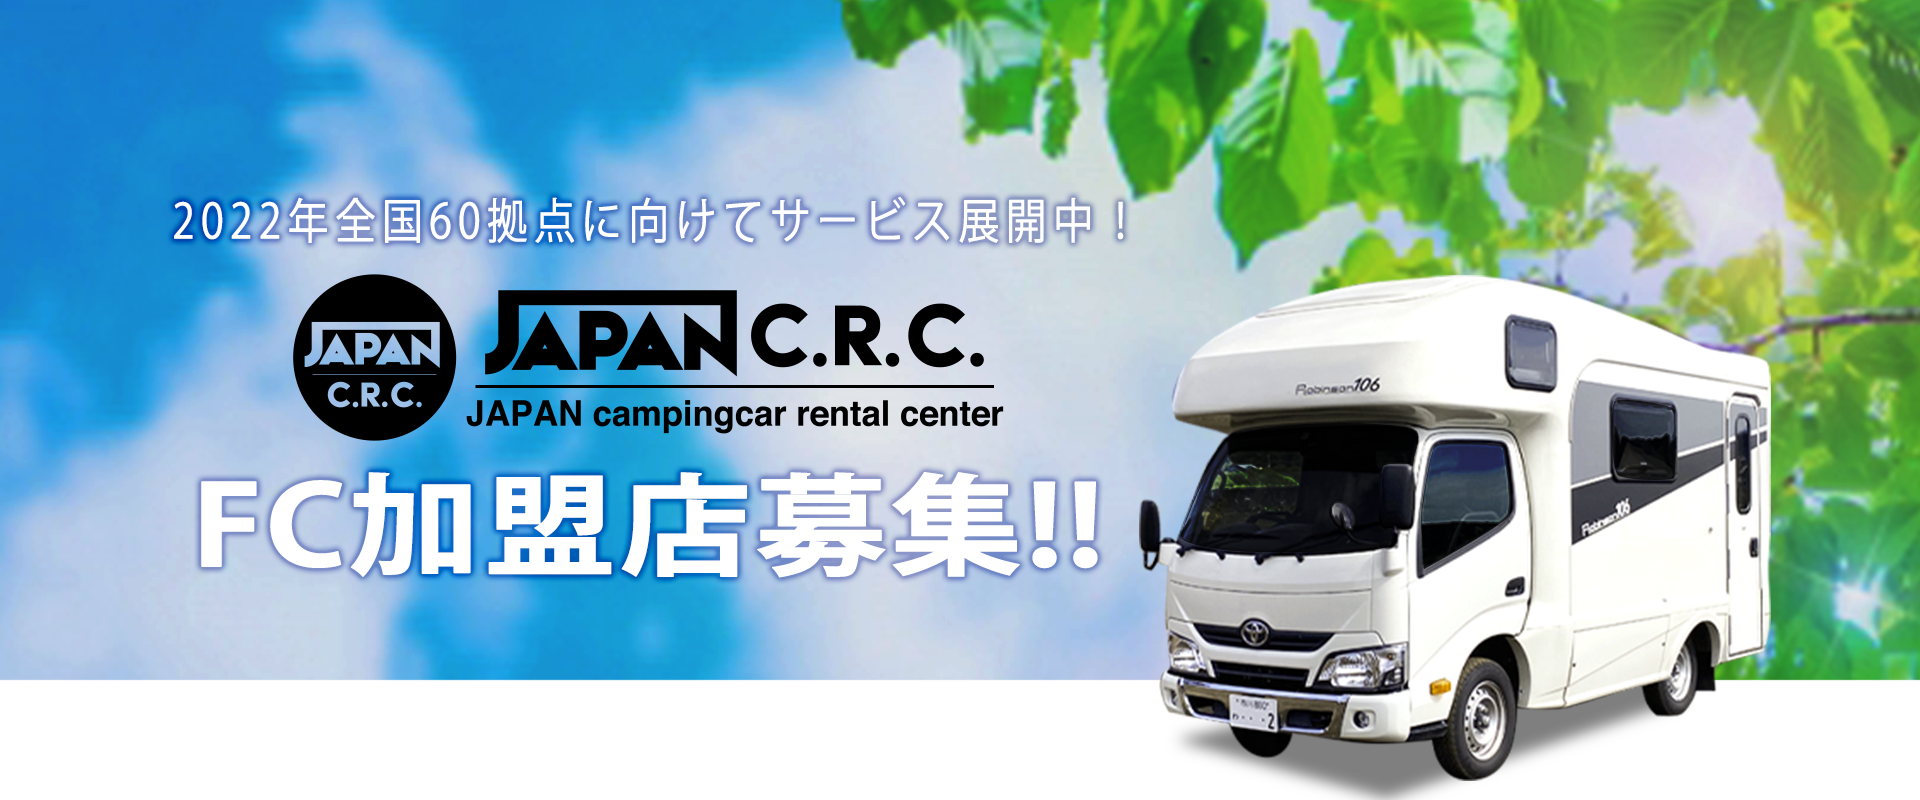 2021年全国60拠点に向けてサービス展開中!JAPAN C.R.C. パートナー募集!!